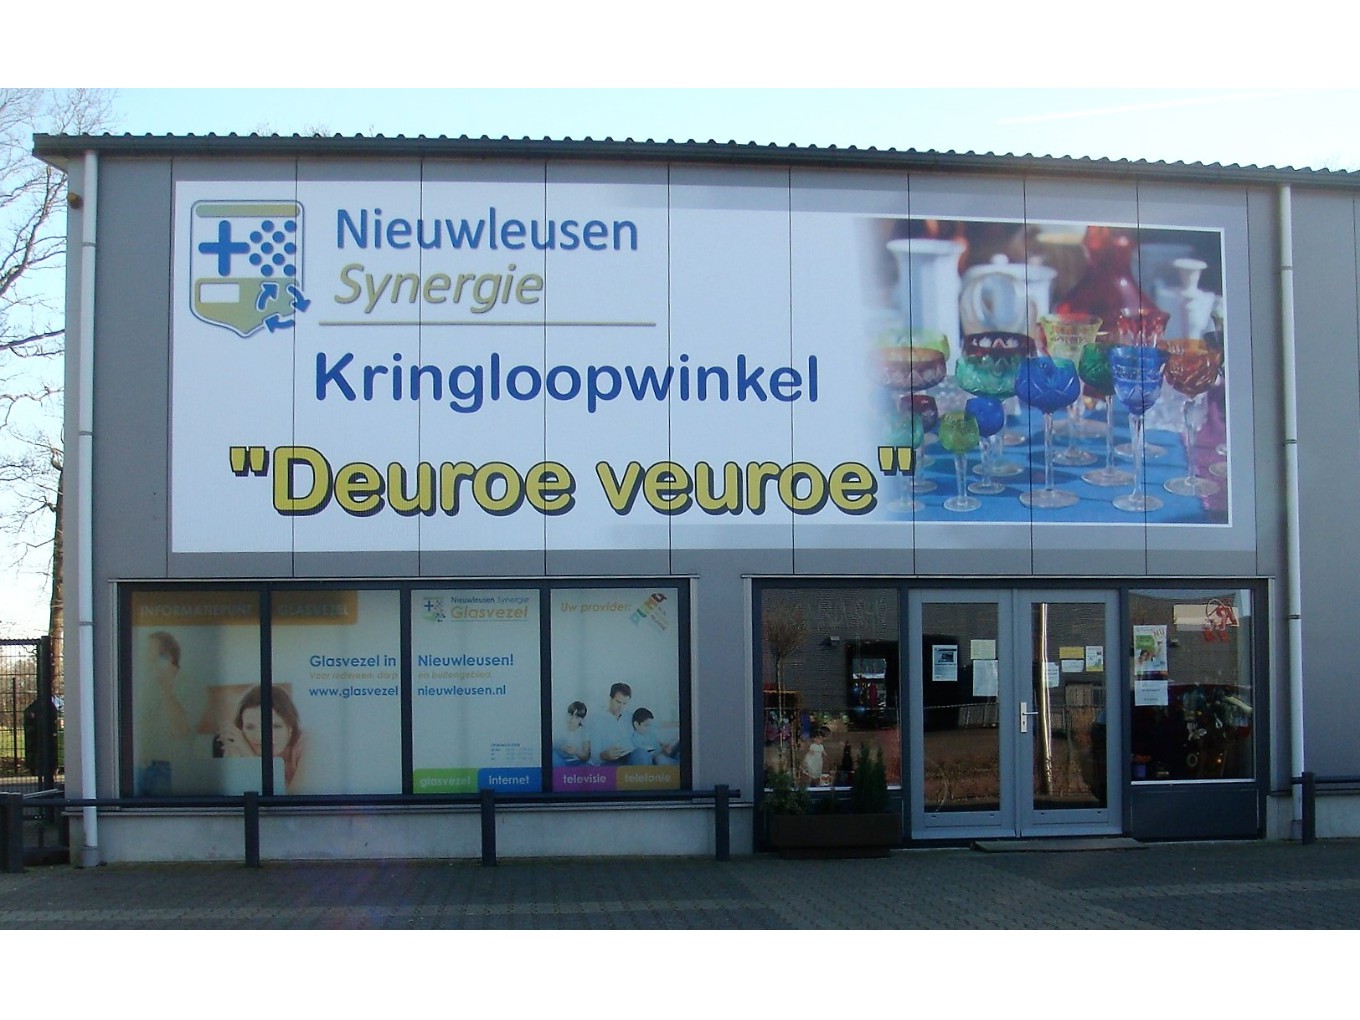 Kringloopwinkel Deuroe Veuroe viert verjaardag met klanten